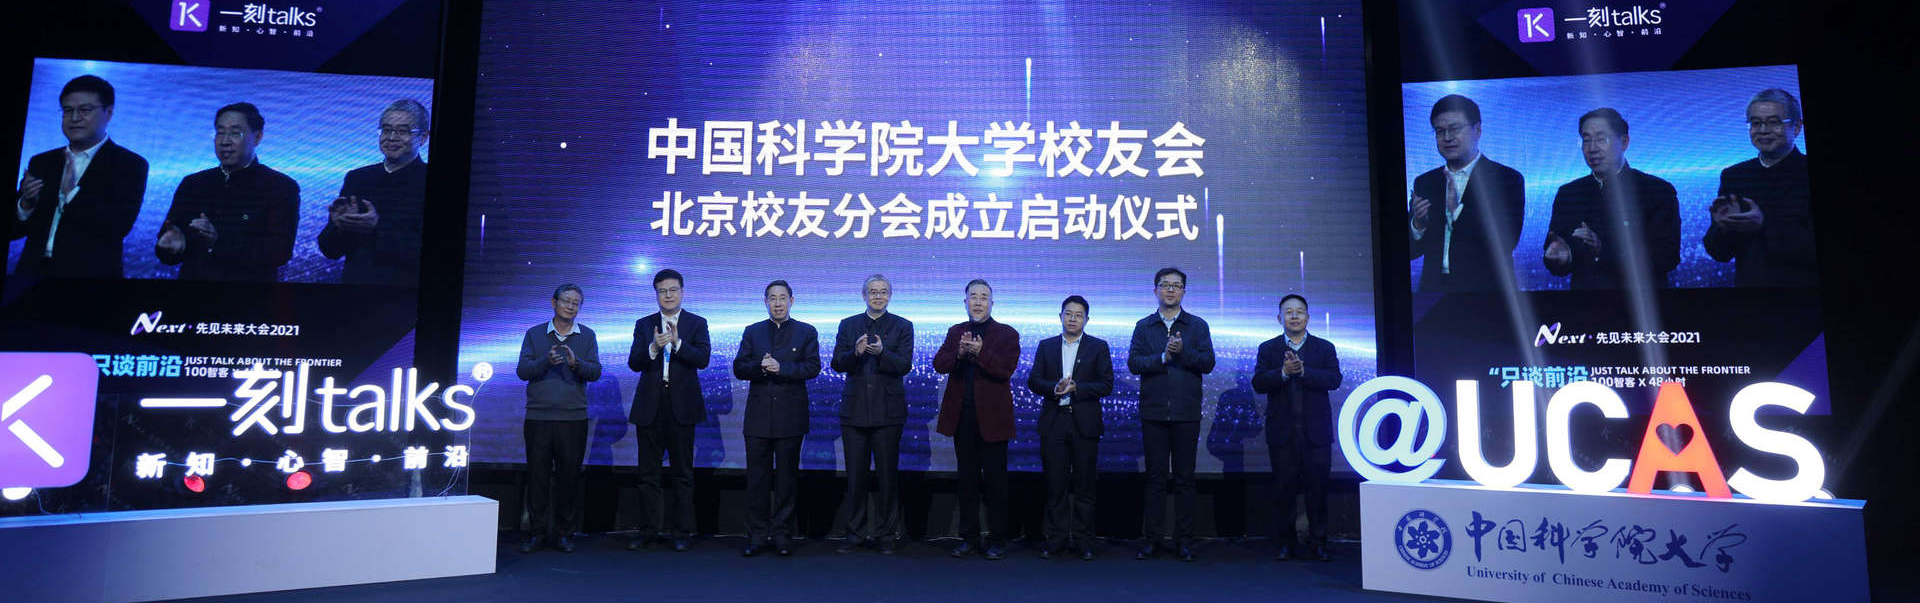 中国科学院大学北京校友分会成立启动仪式